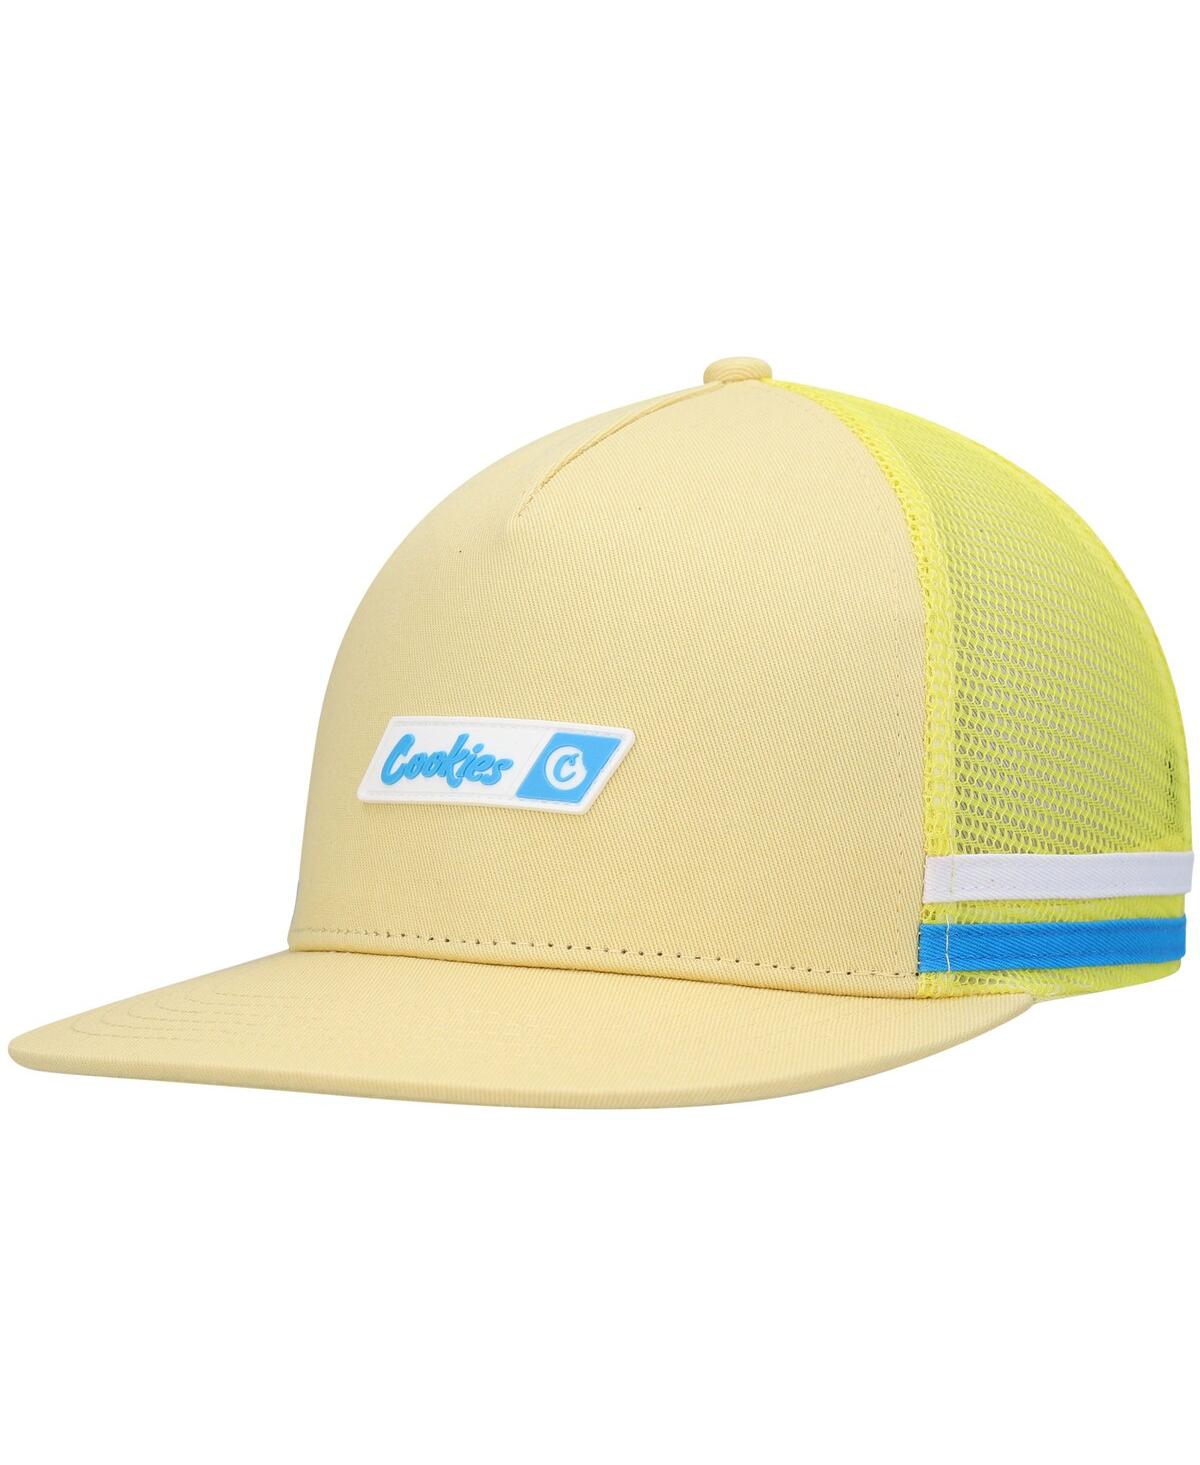 Men's Cookies Yellow Bal Harbor Trucker Snapback Hat - Yellow